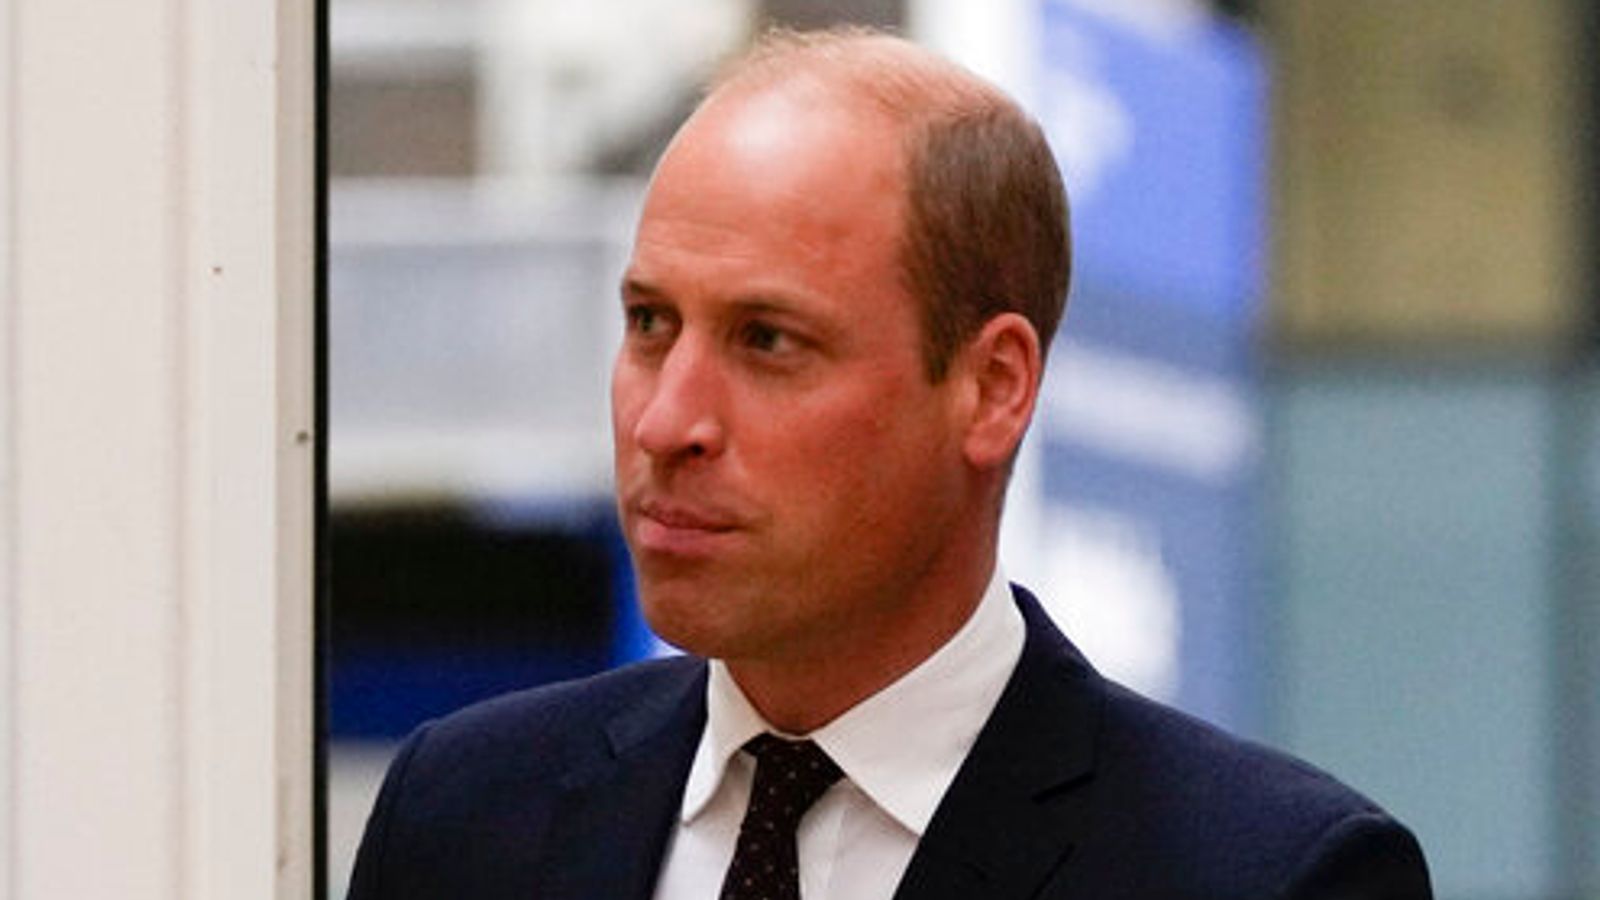 Le prince William indique qu’il ne restera pas silencieux sur les questions qui comptent pour lui – en fait, cela va s’aggraver |  Nouvelles du Royaume-Uni